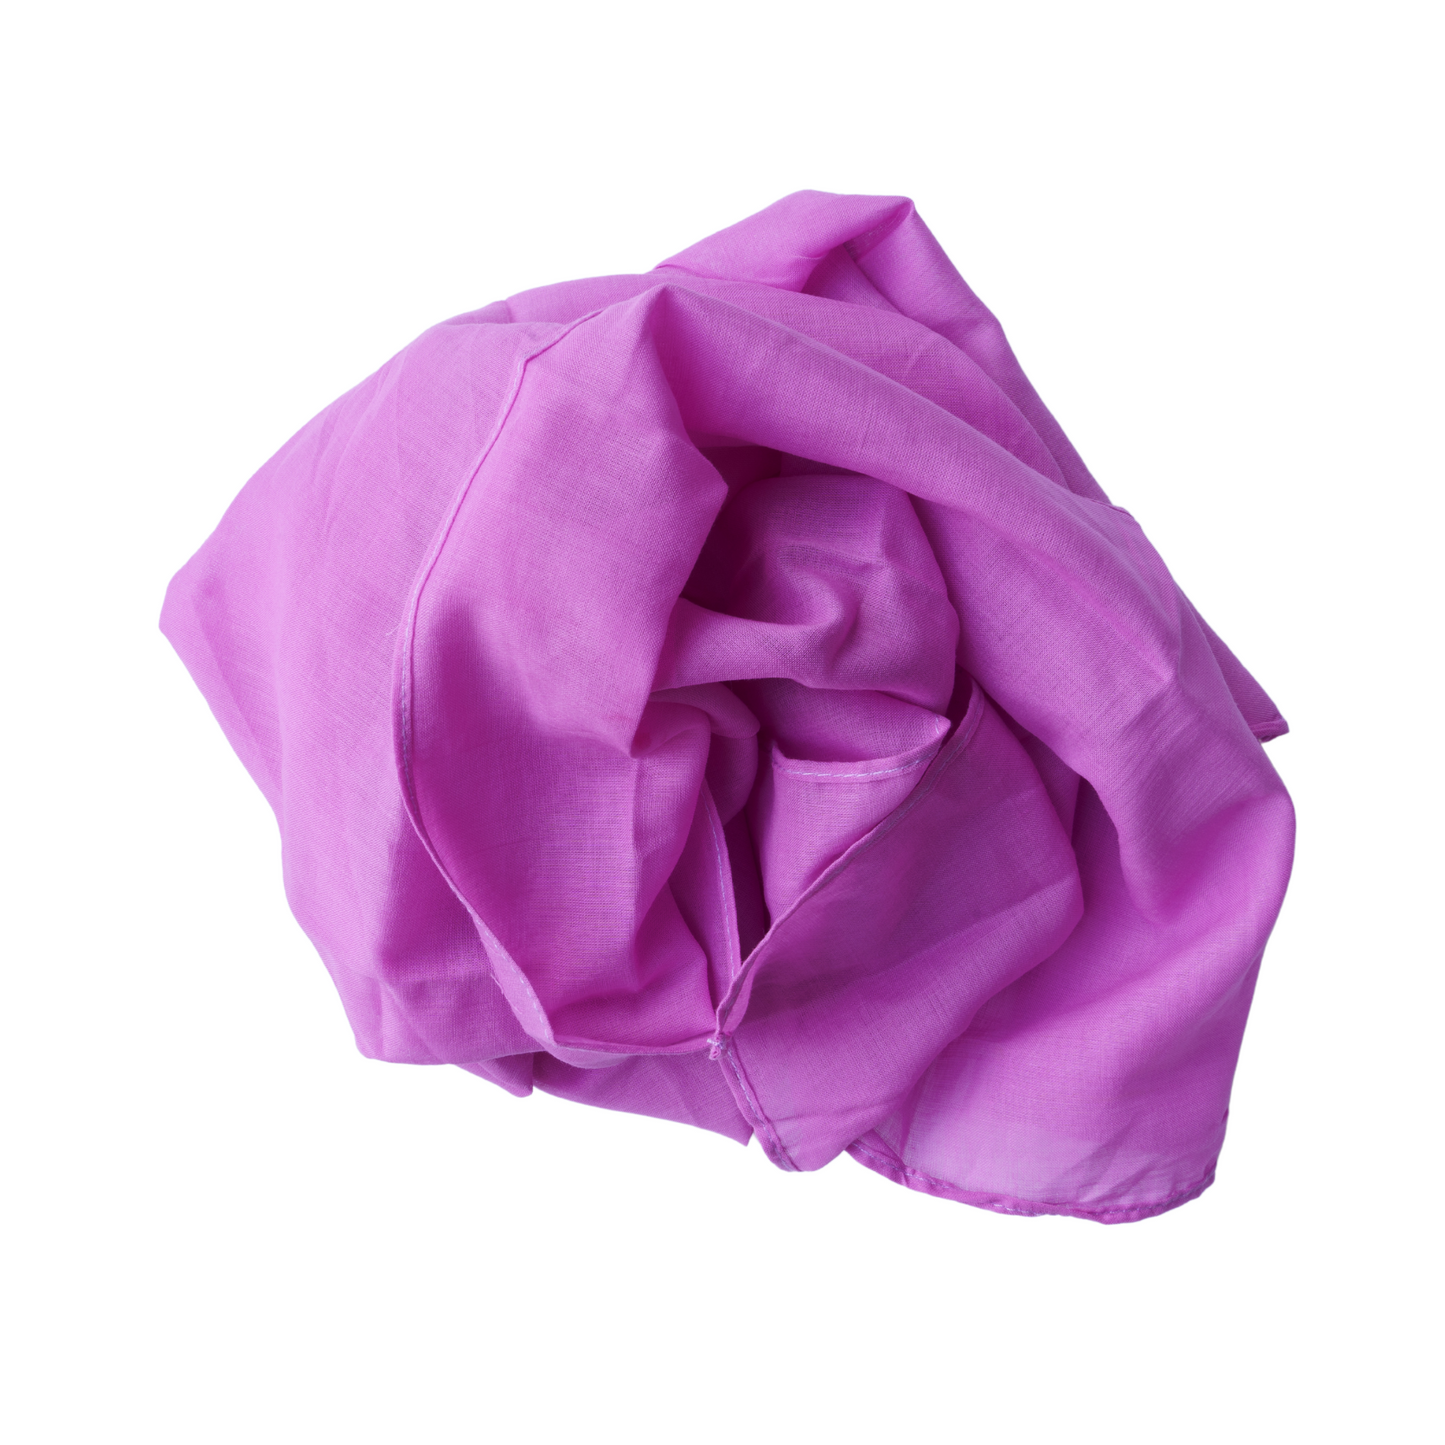 Speeldoek - Donker roze - 90 x 90 cm